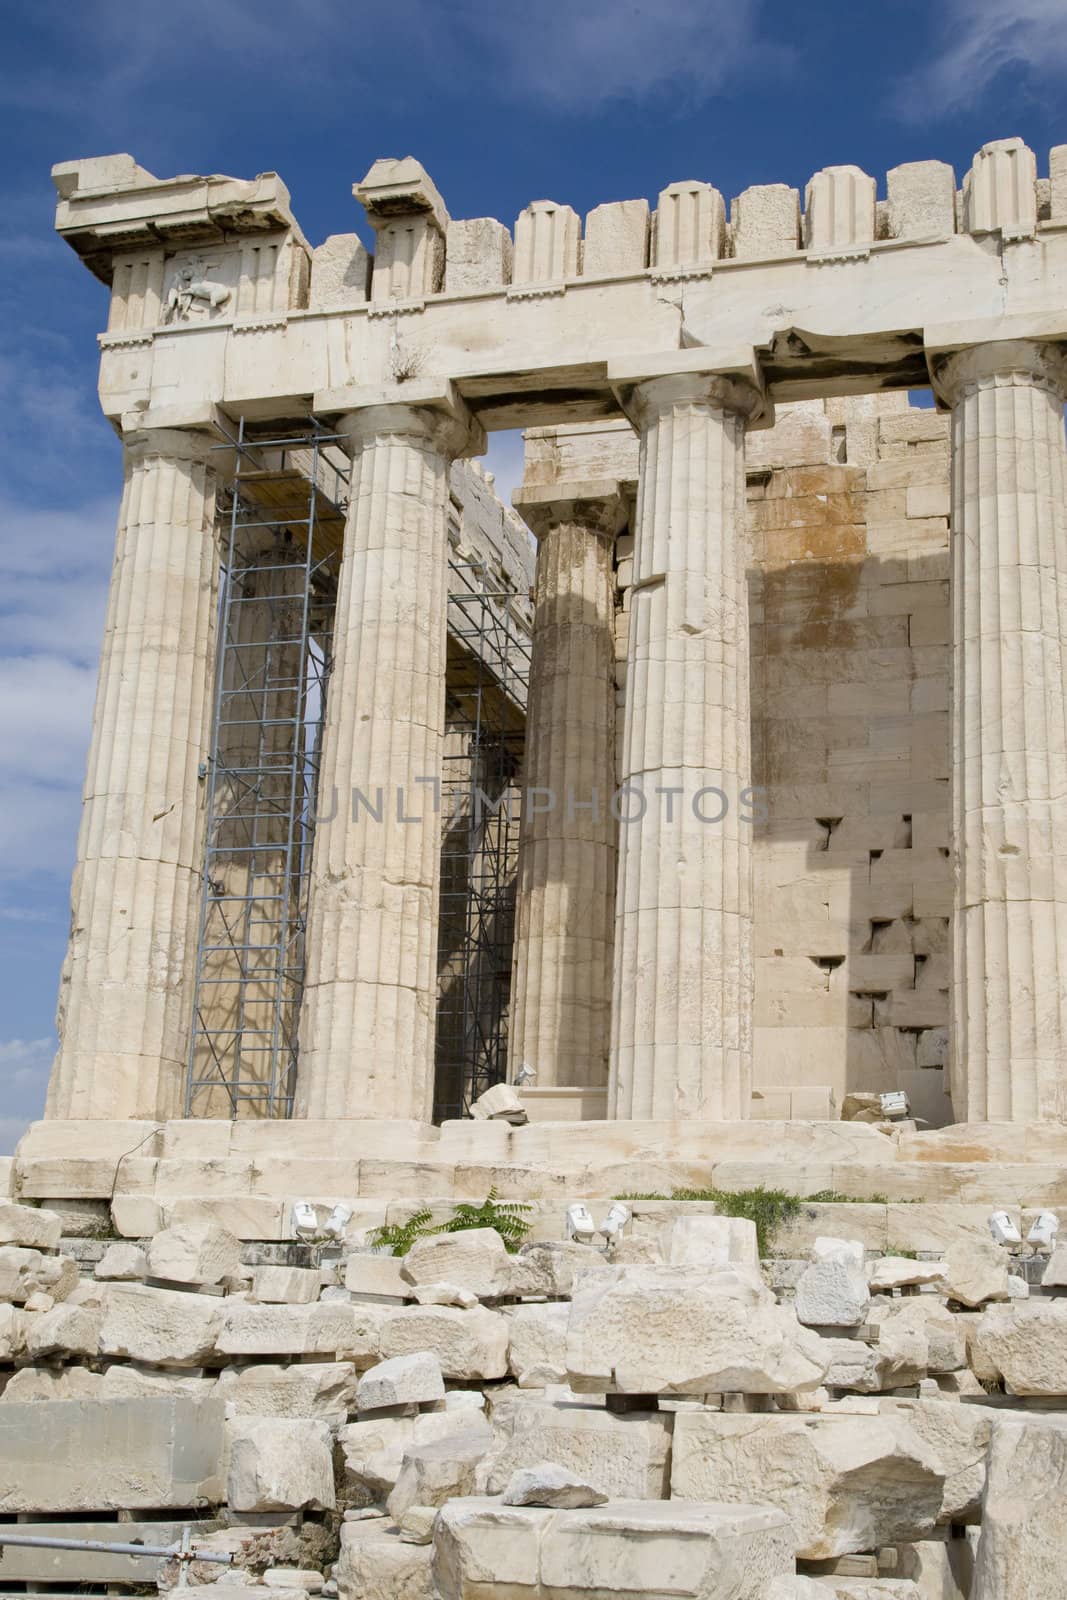 The Parthenon at Acropolis, Athens